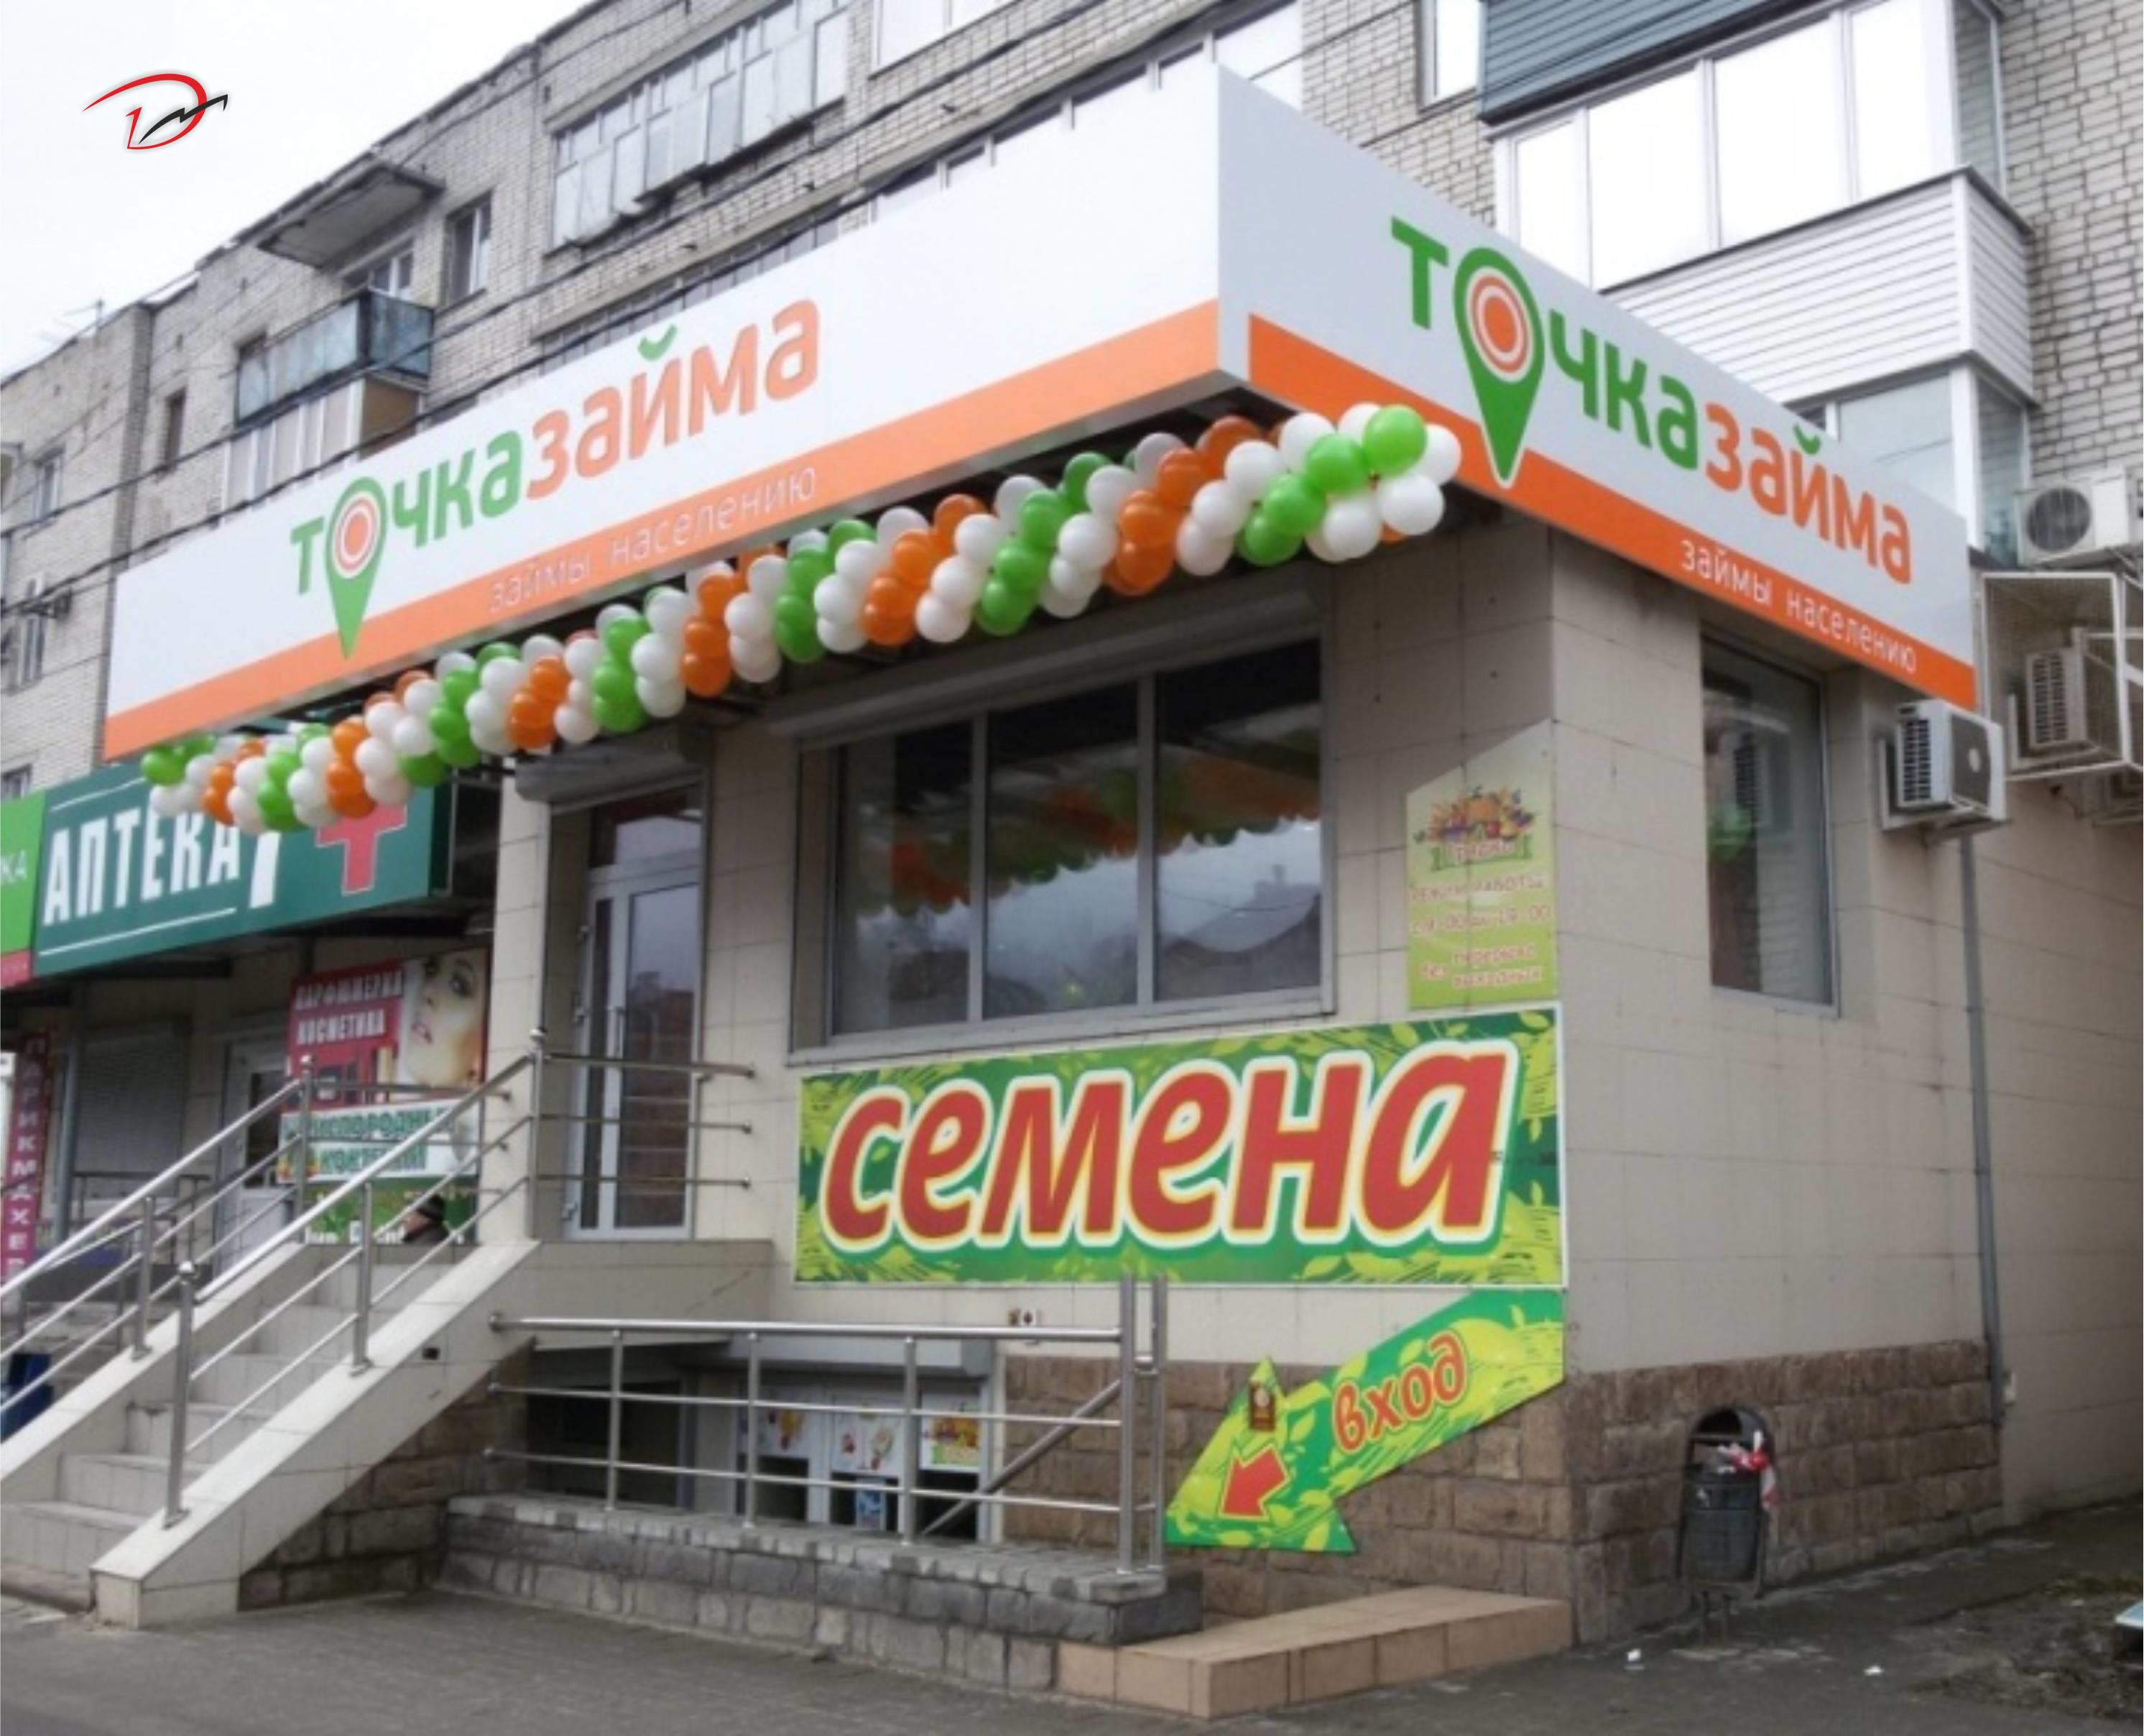 Мини займы в Пятигорске не онлайн круглосуточно